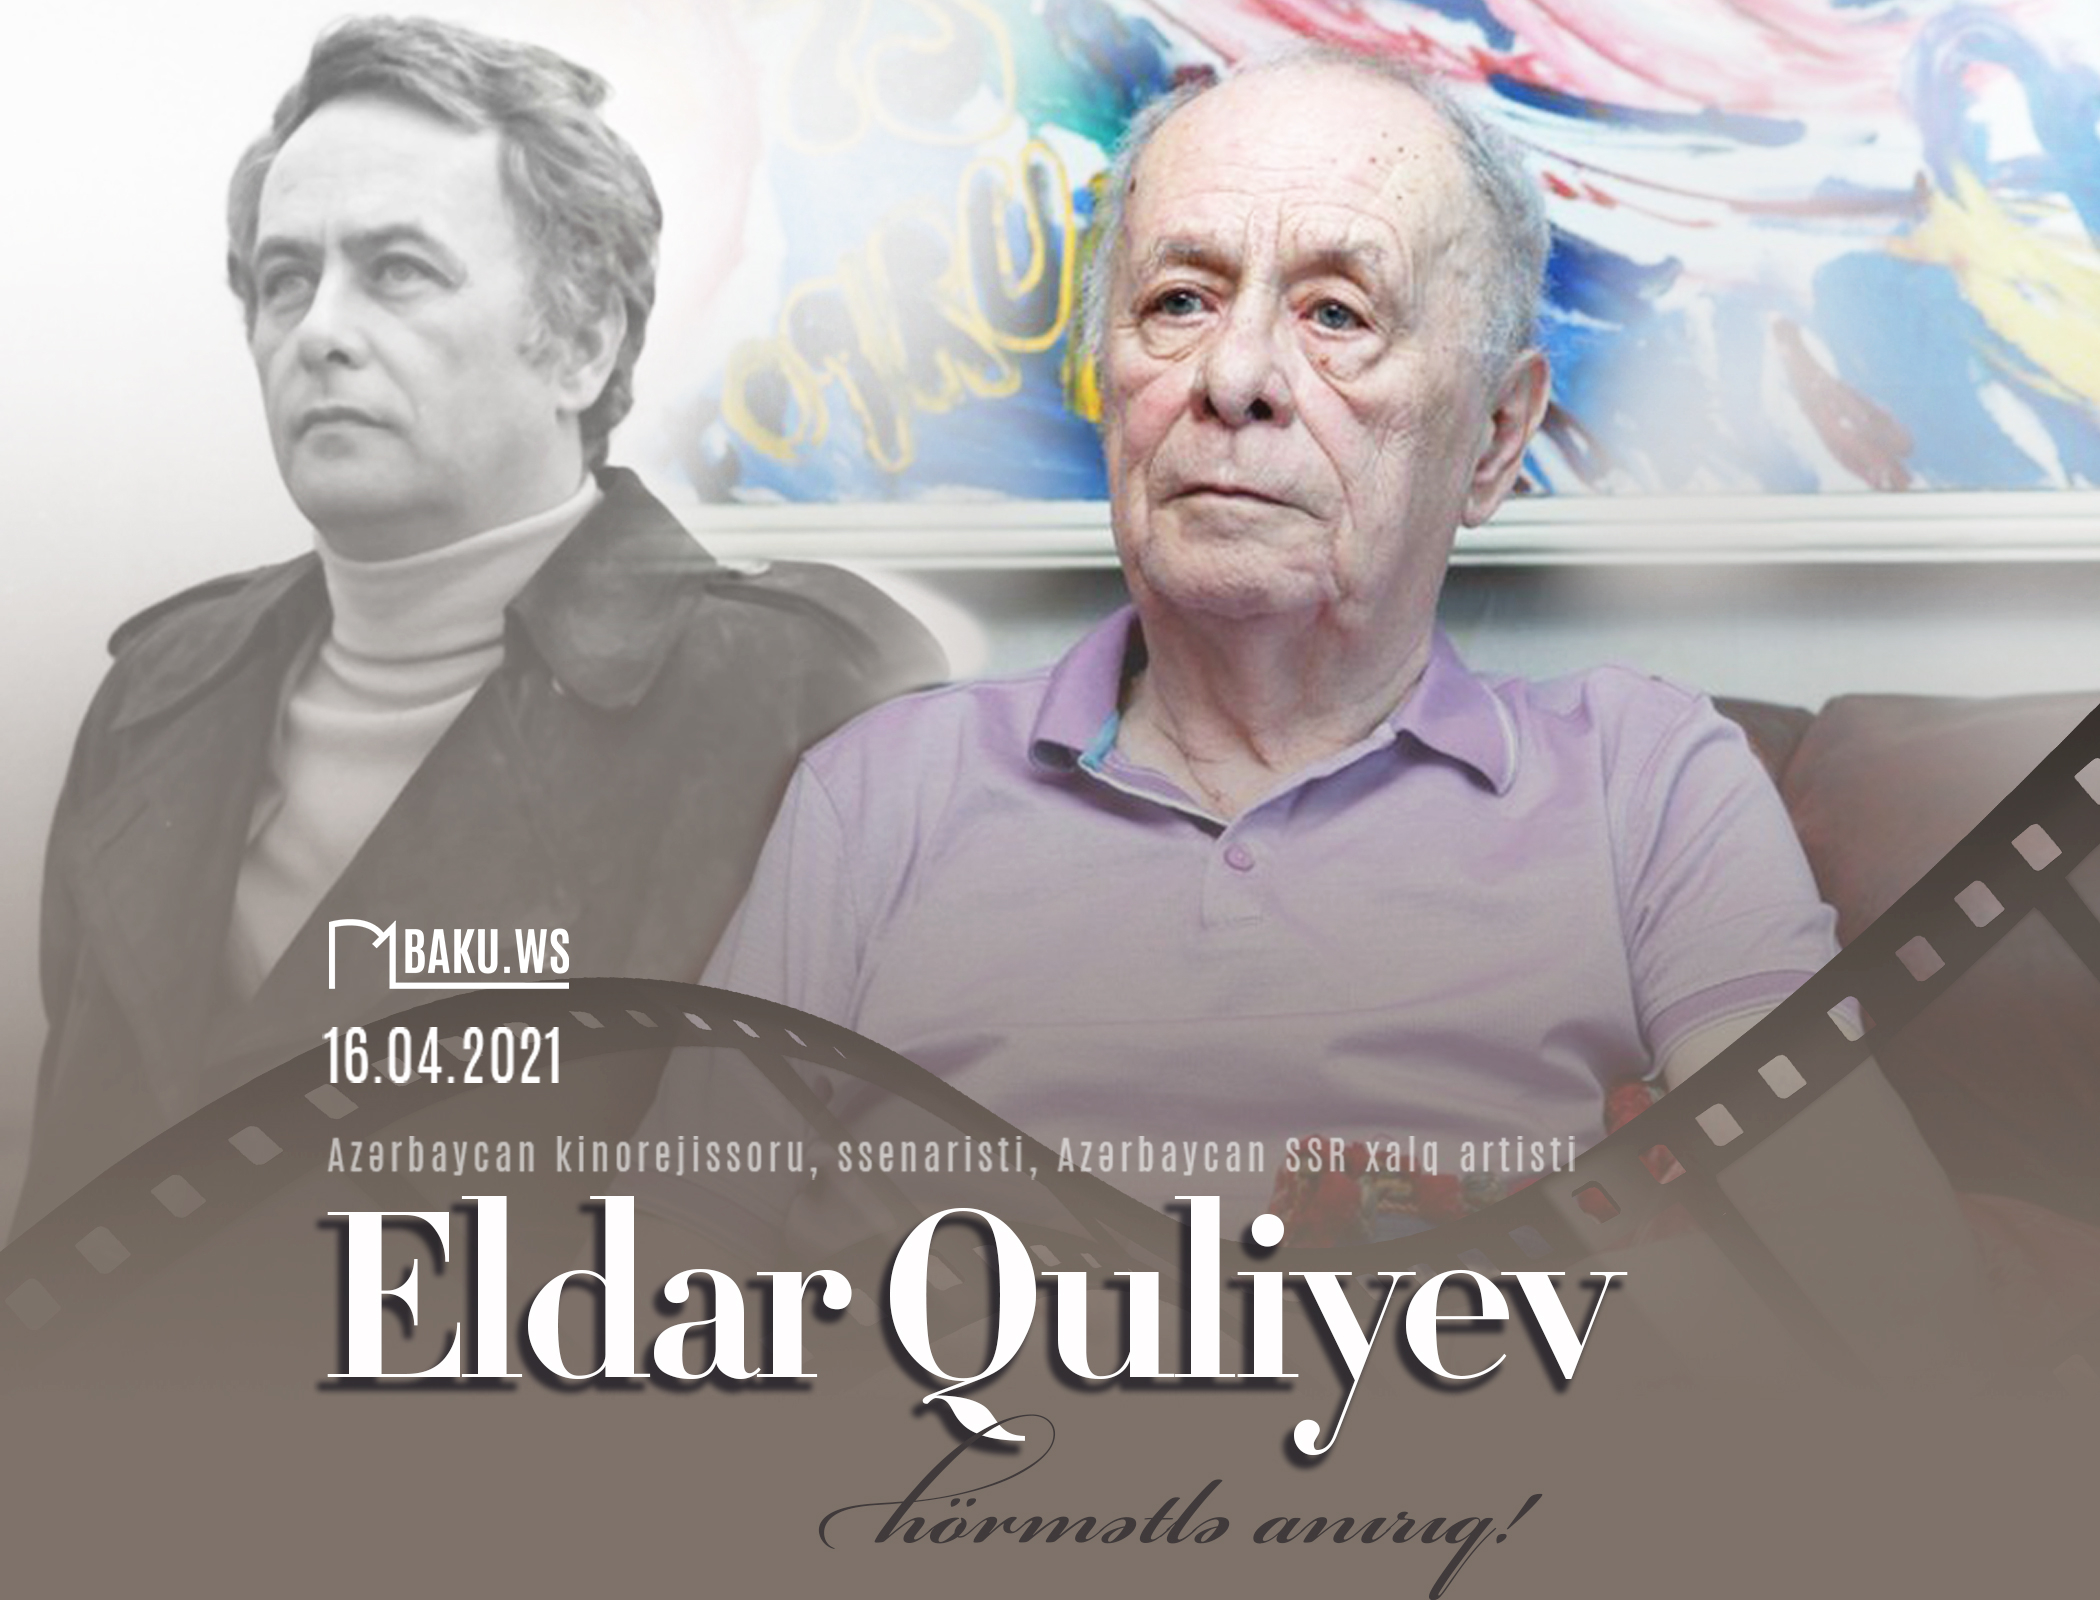 Azərbaycanlı kinorejissor Eldar Quliyevin anım günüdür